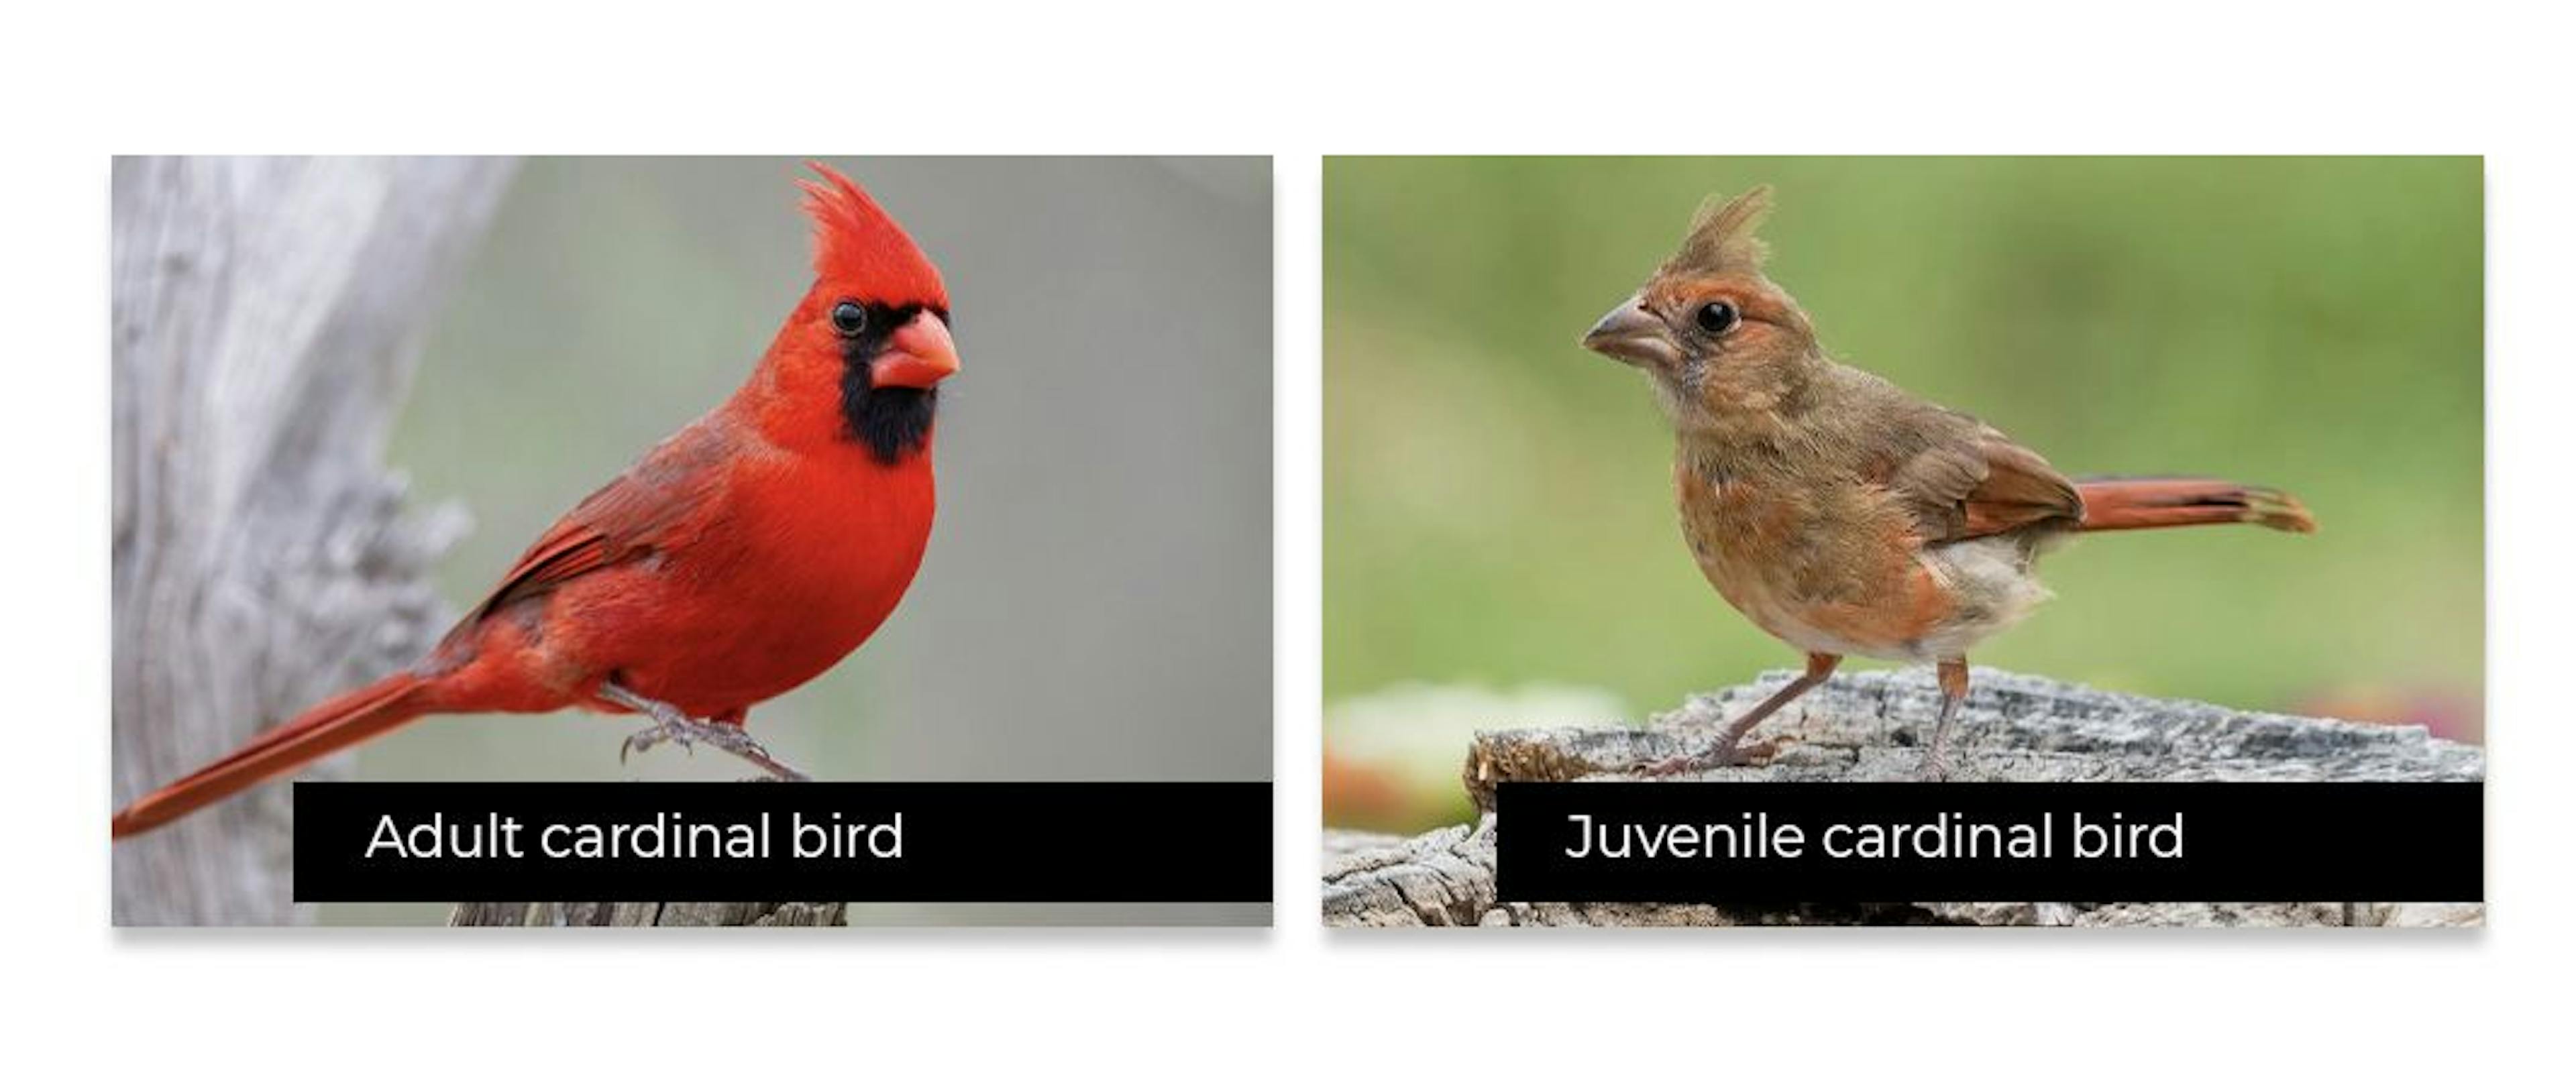 Freqüentemente, os pássaros juvenis não se parecem em nada com os adultos